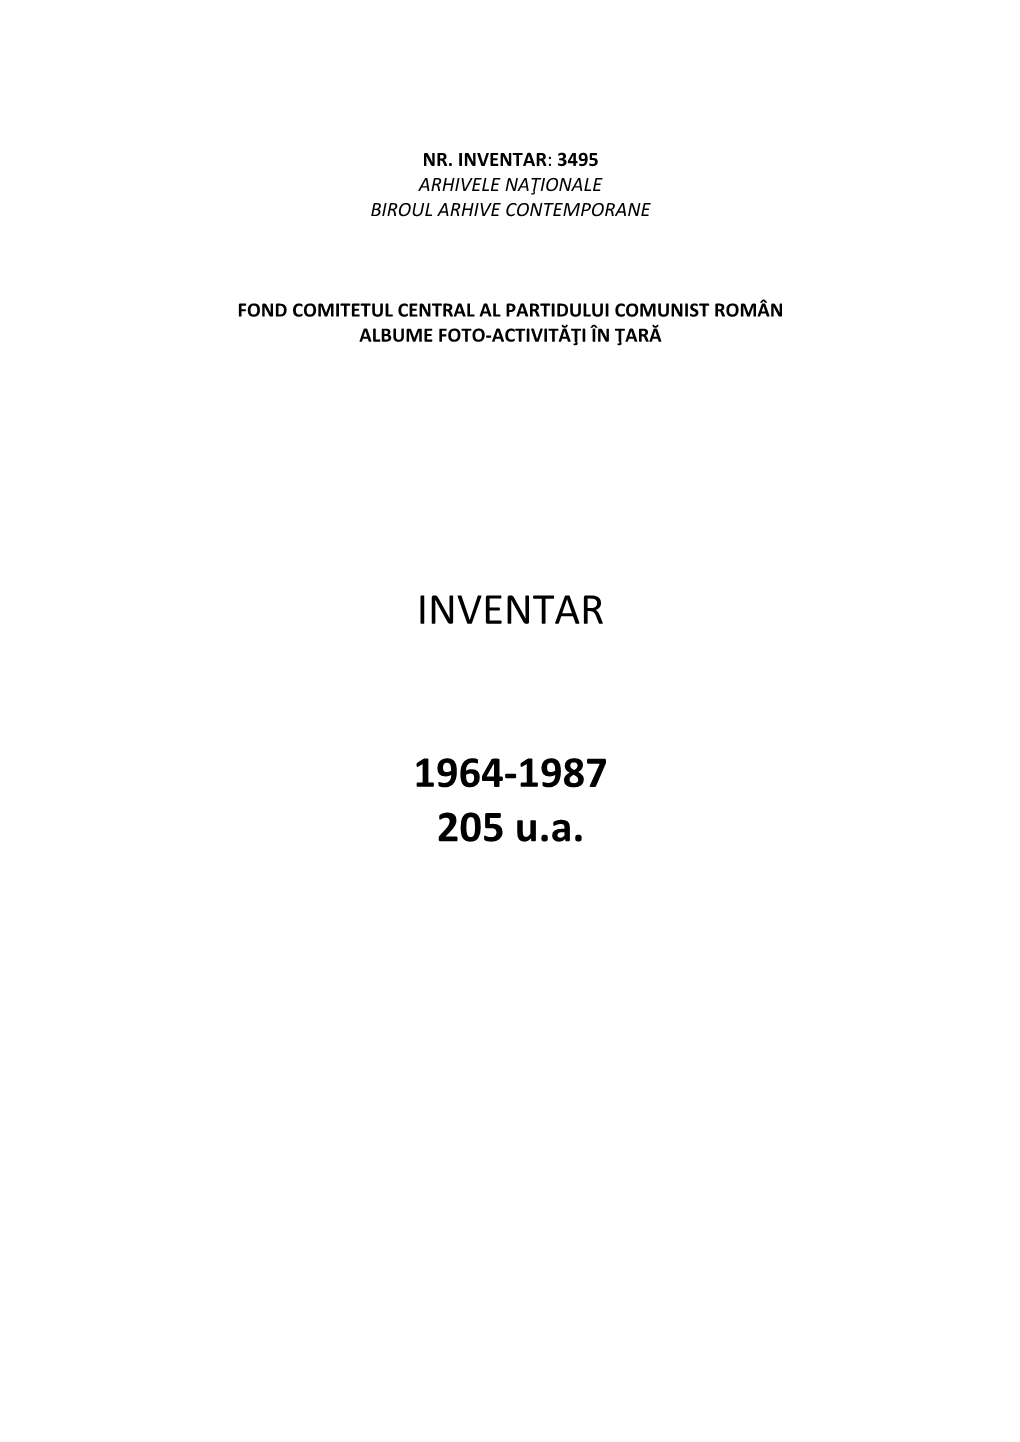 INVENTAR 1964-1987 205 U.A